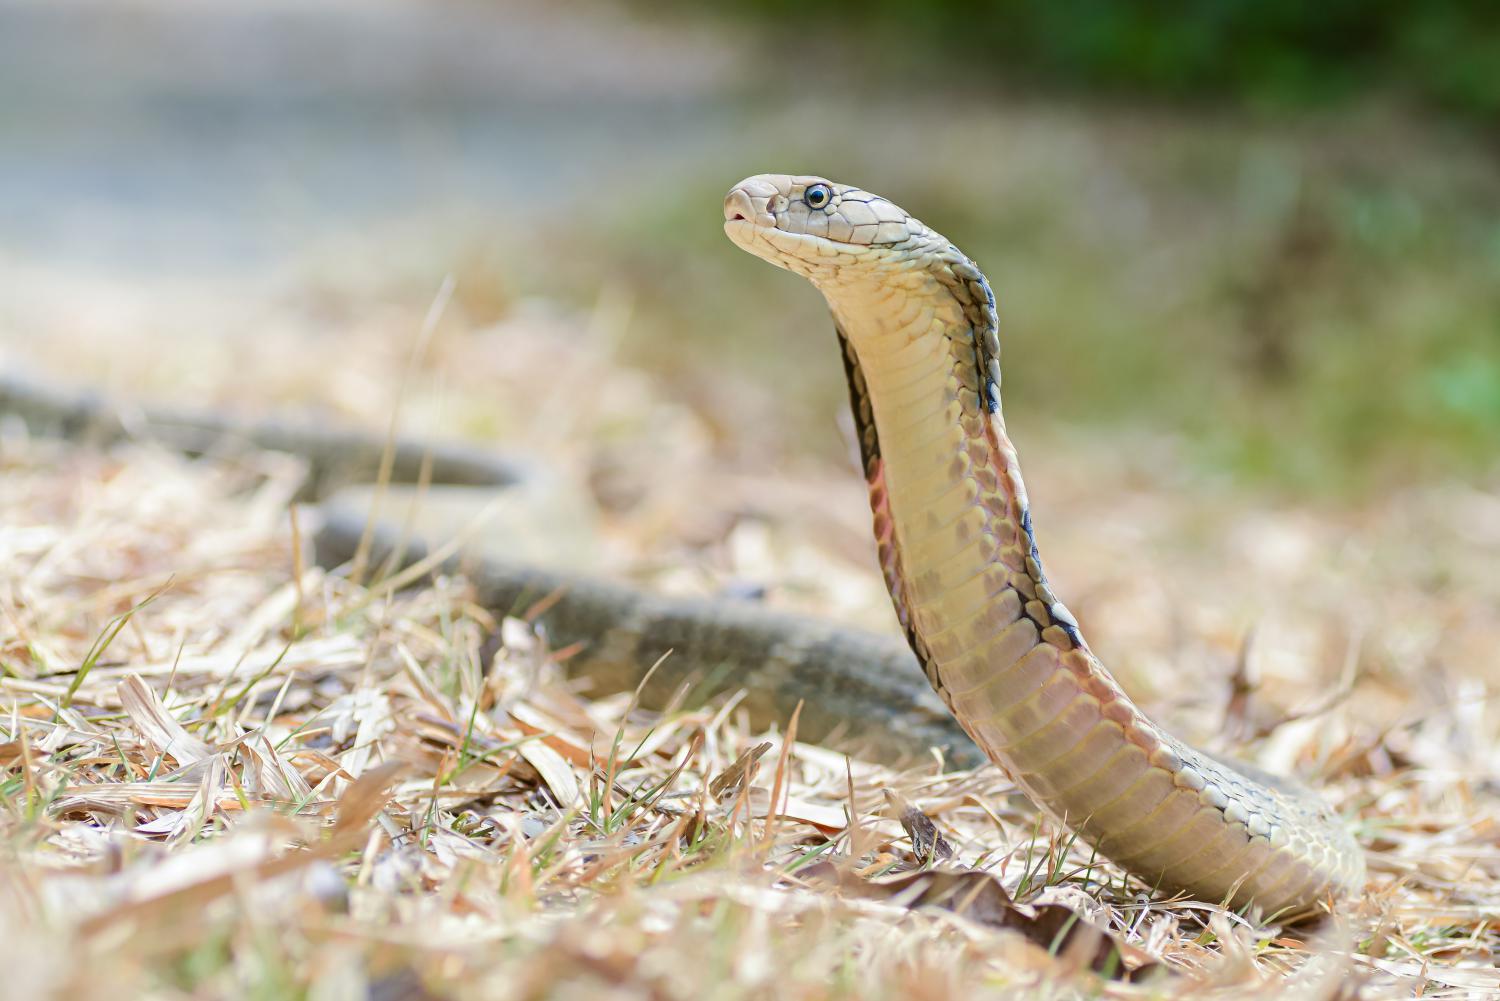 king cobra snake eating